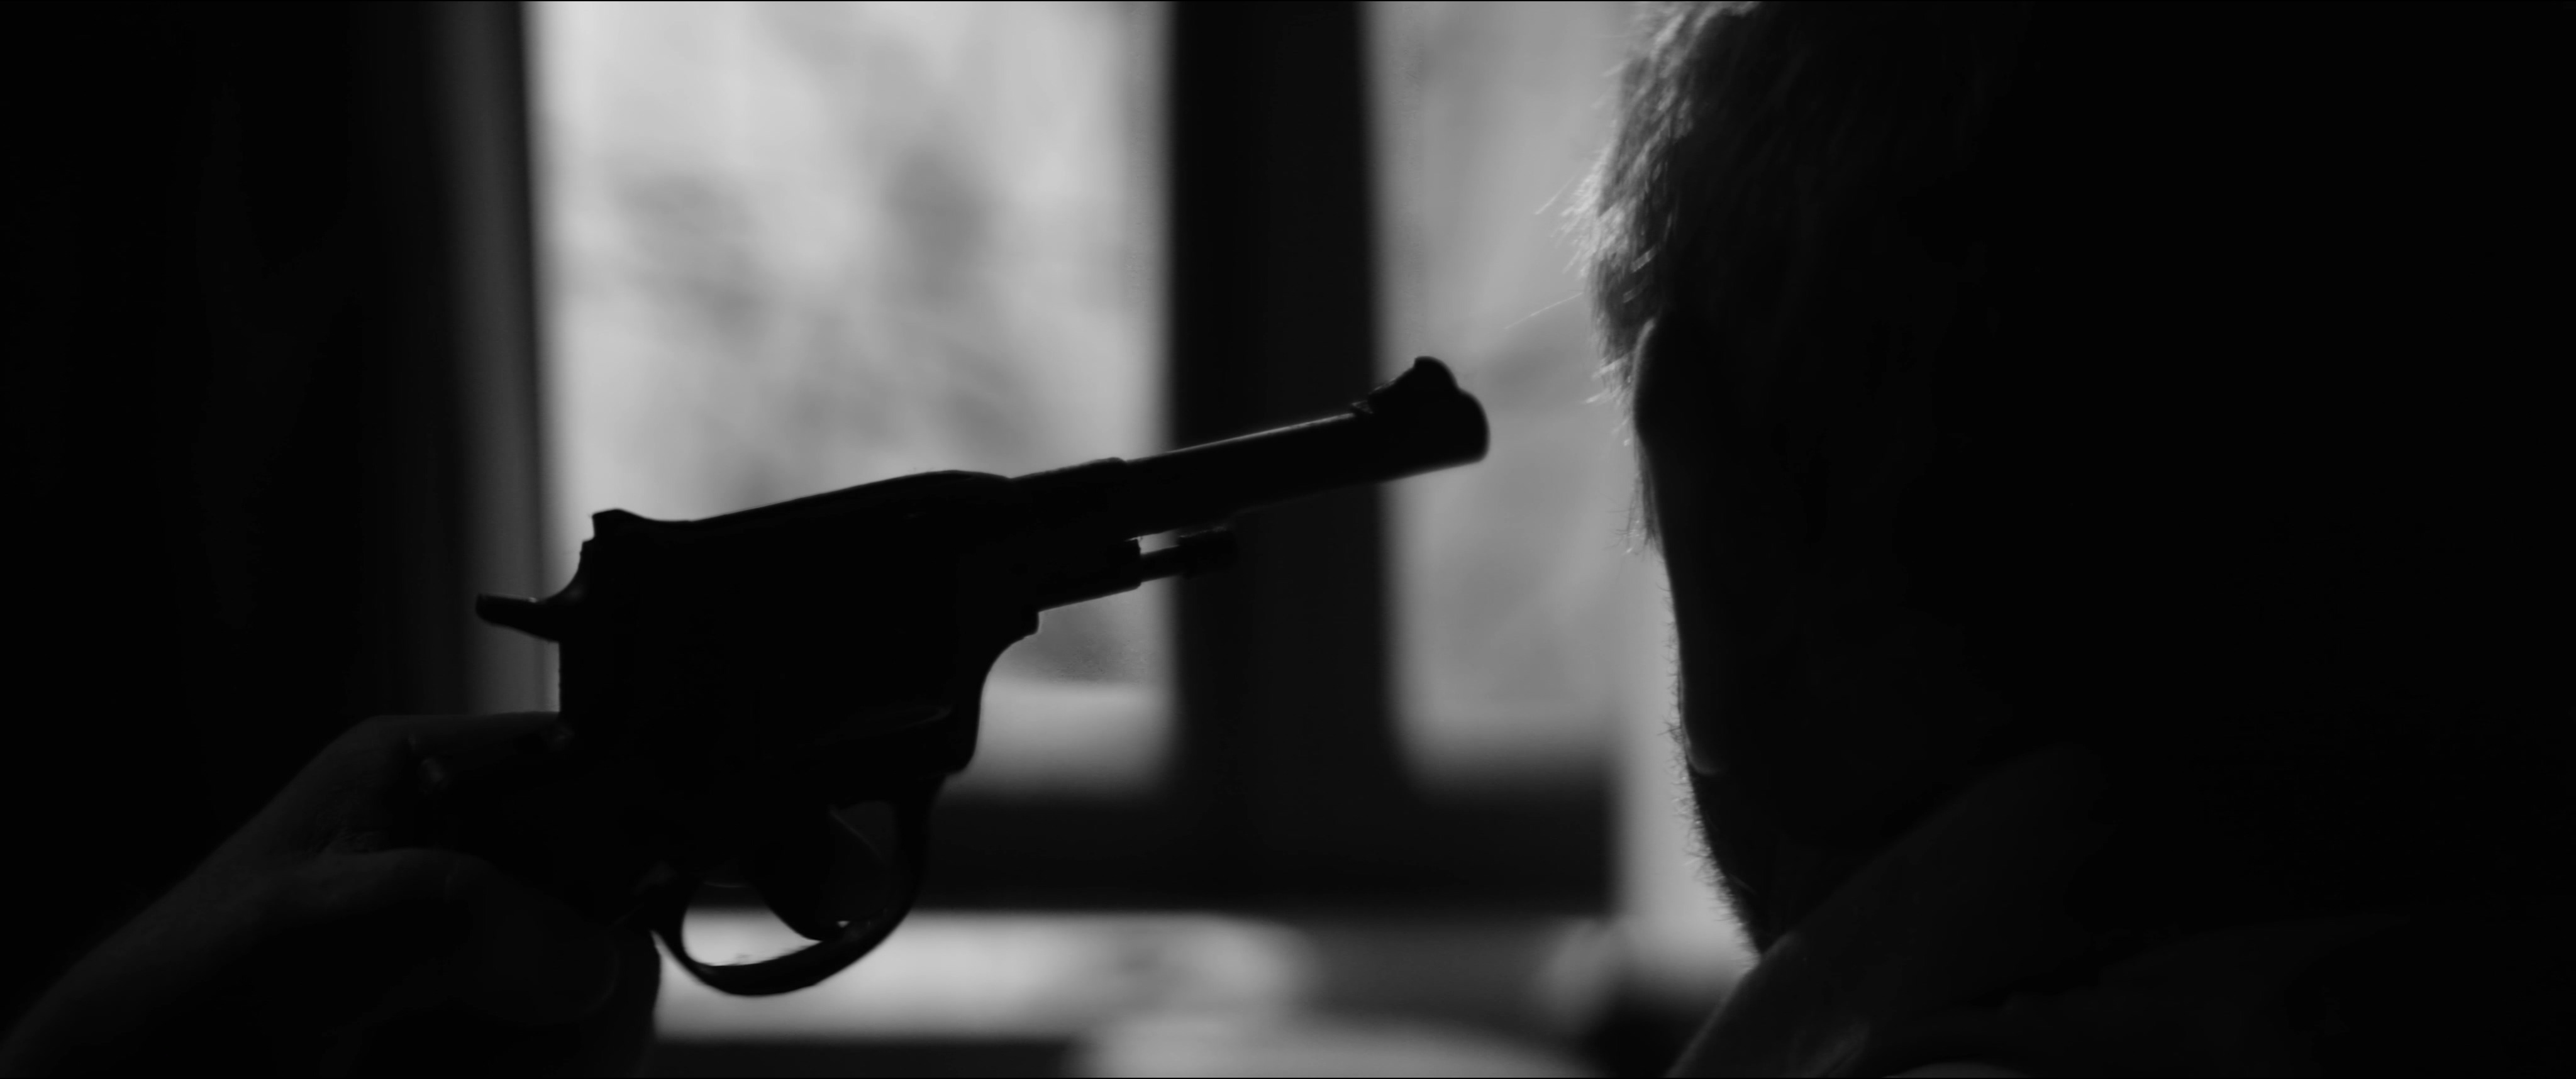 Beholder - Official Short Film screenshot